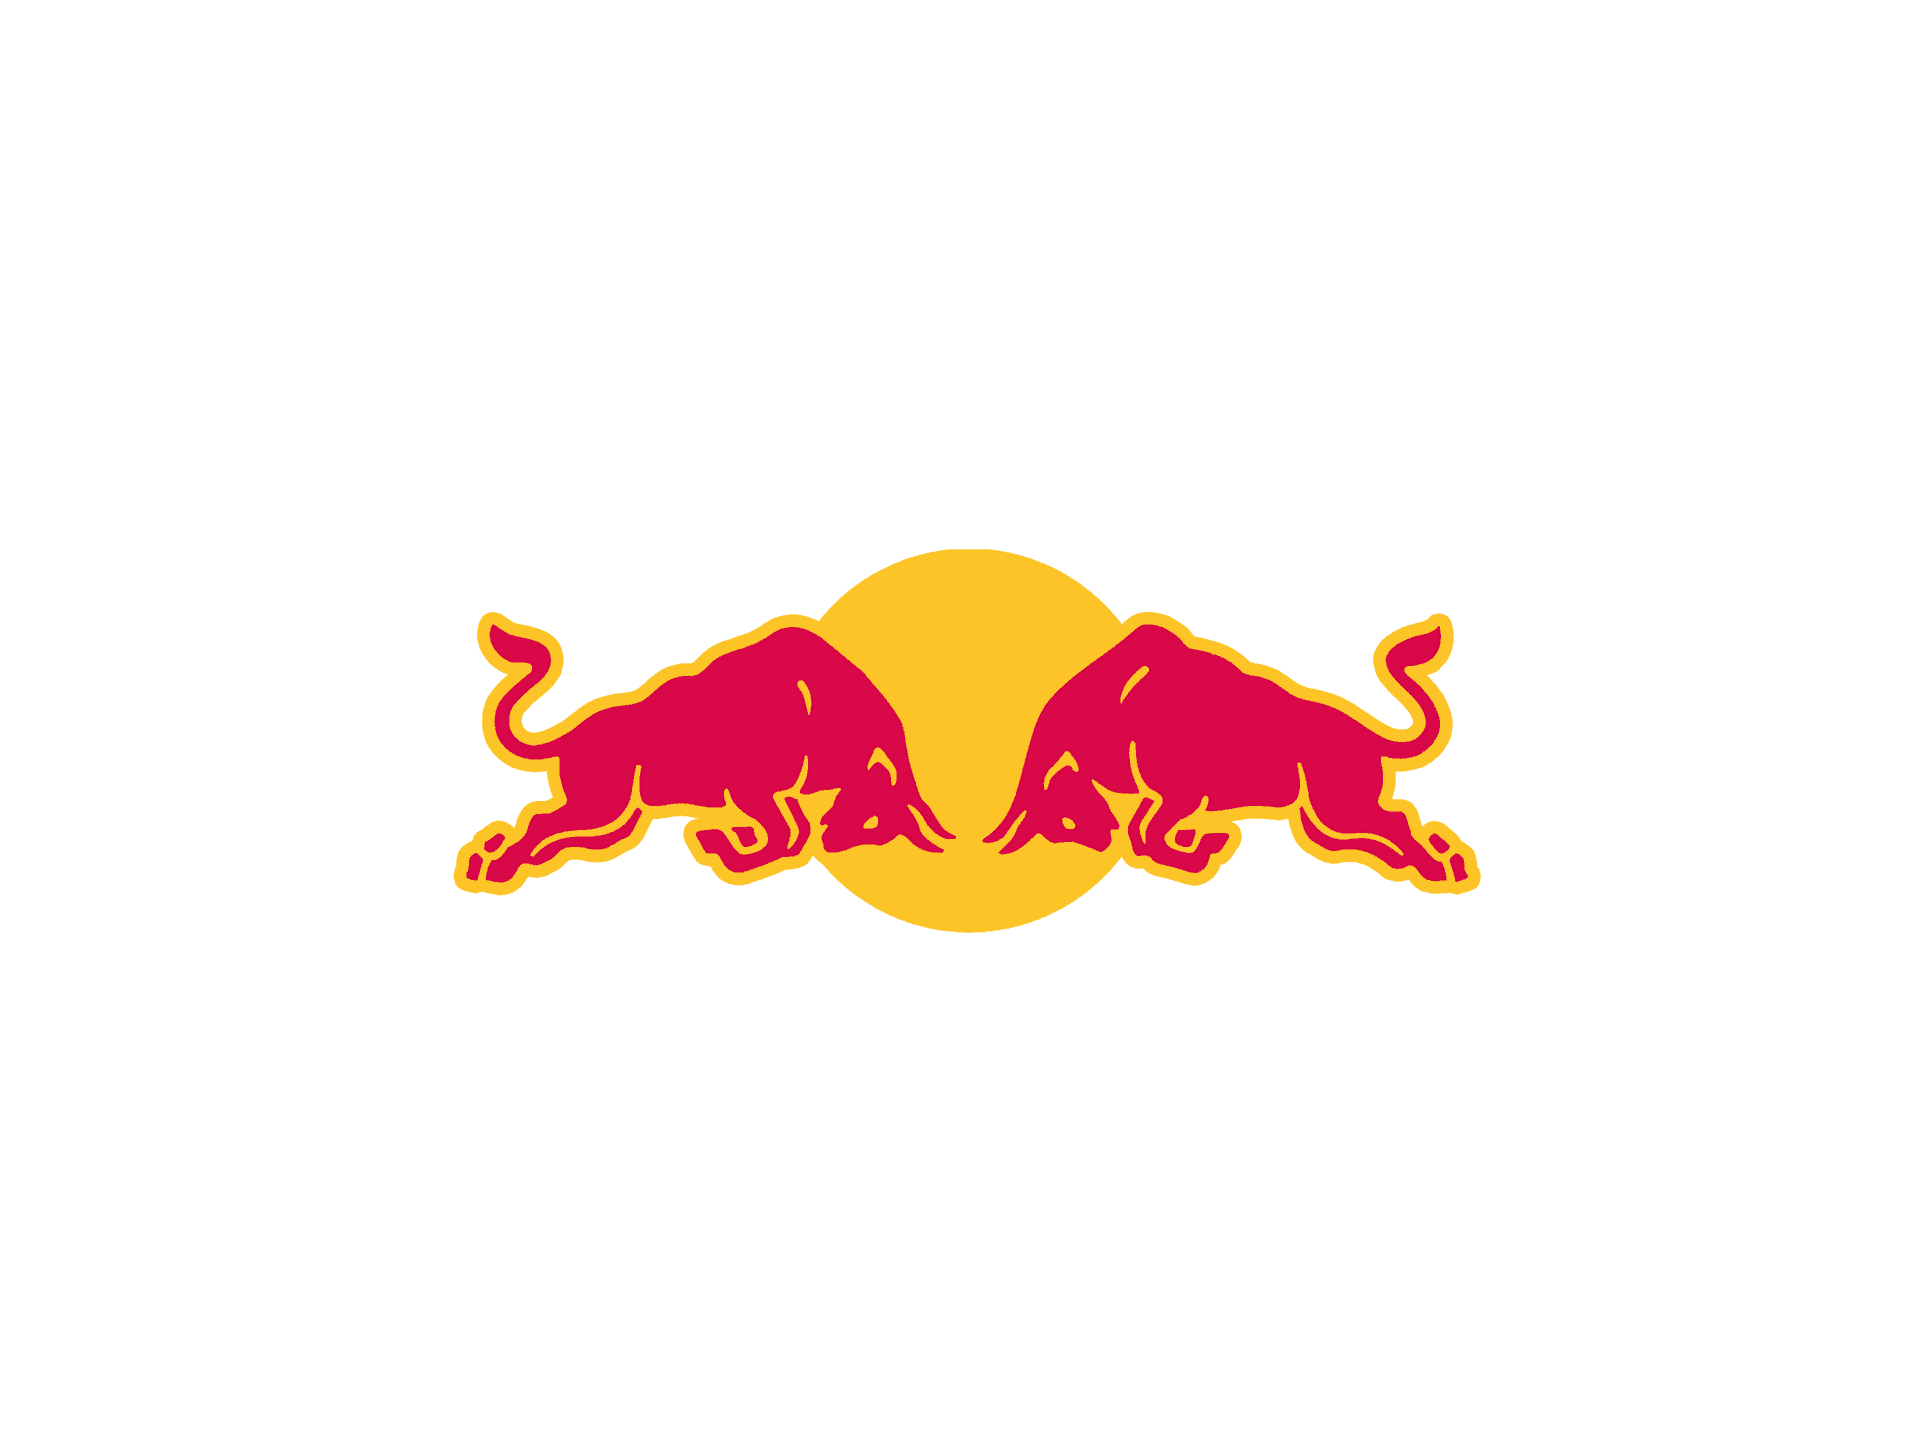 Holddig Aktiv Og Få Ny Energi Med Red Bull.